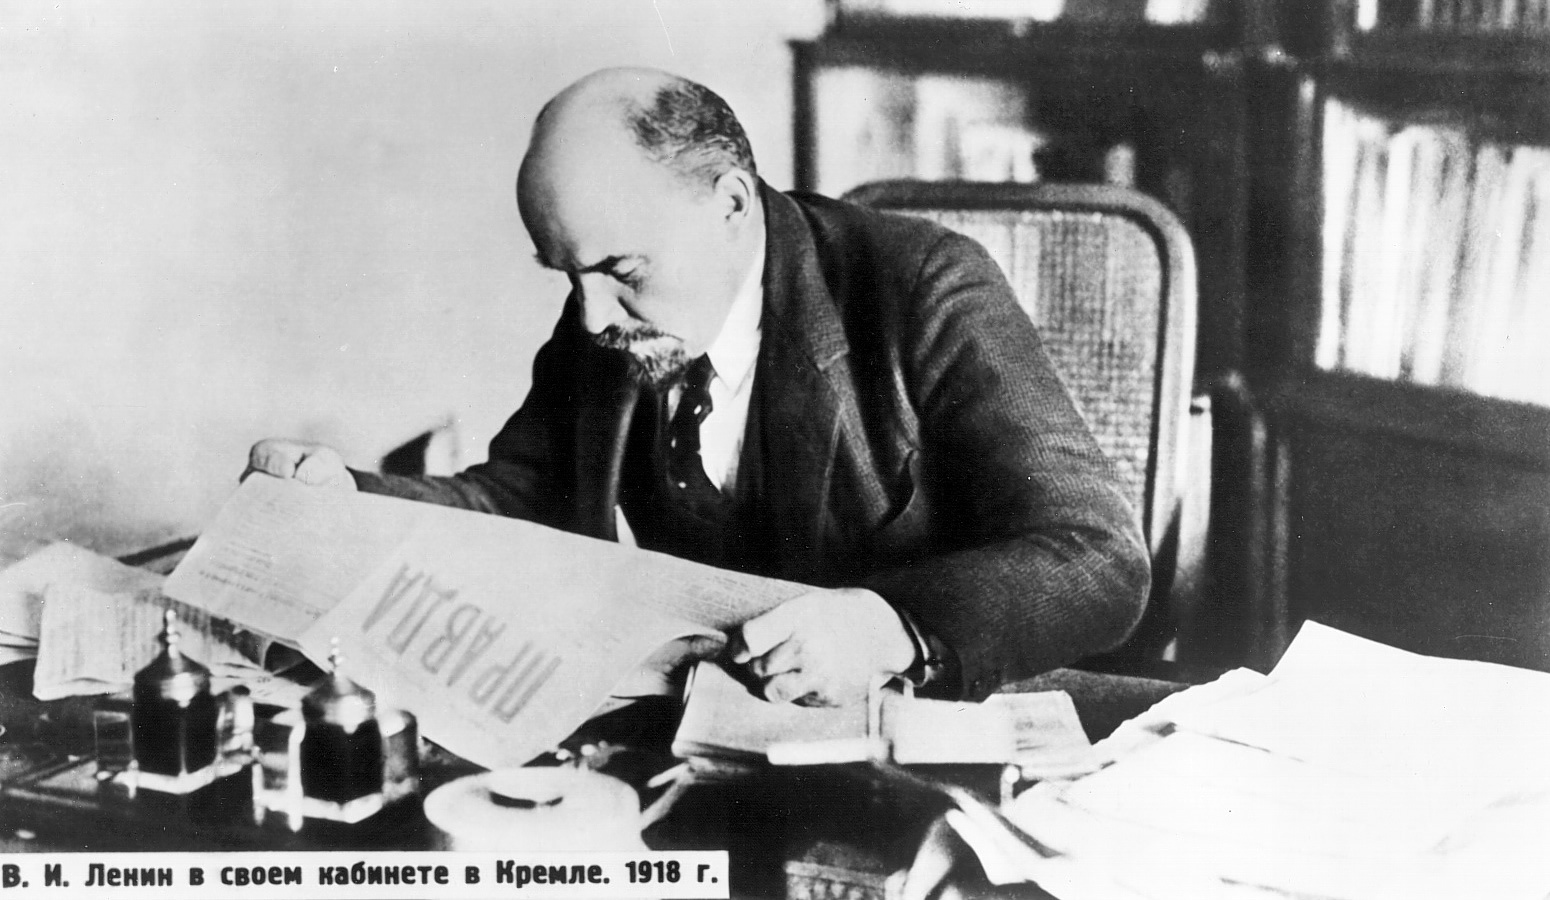 За 124 дні «Смольнинський періоду» Ленін написав понад 110 статей, проектів декретів і резолюцій, виголосив понад 70 доповідей і промов, написав близько 120 листів, телеграм і записок, брав участь у редагуванні більш ніж 40 державних і партійних документів